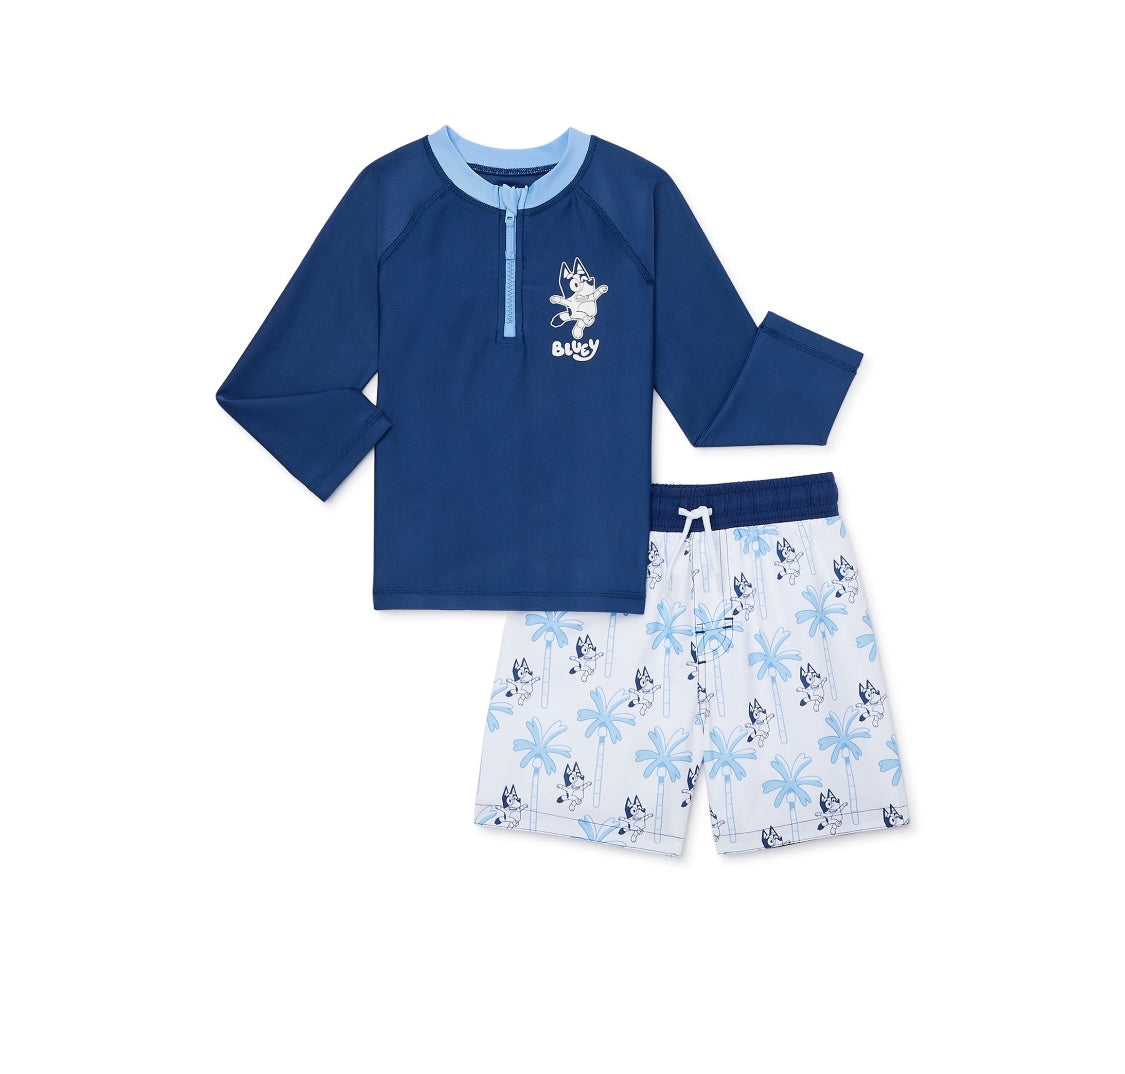 Pijama set Bluey – Karen Variedad de Artículos